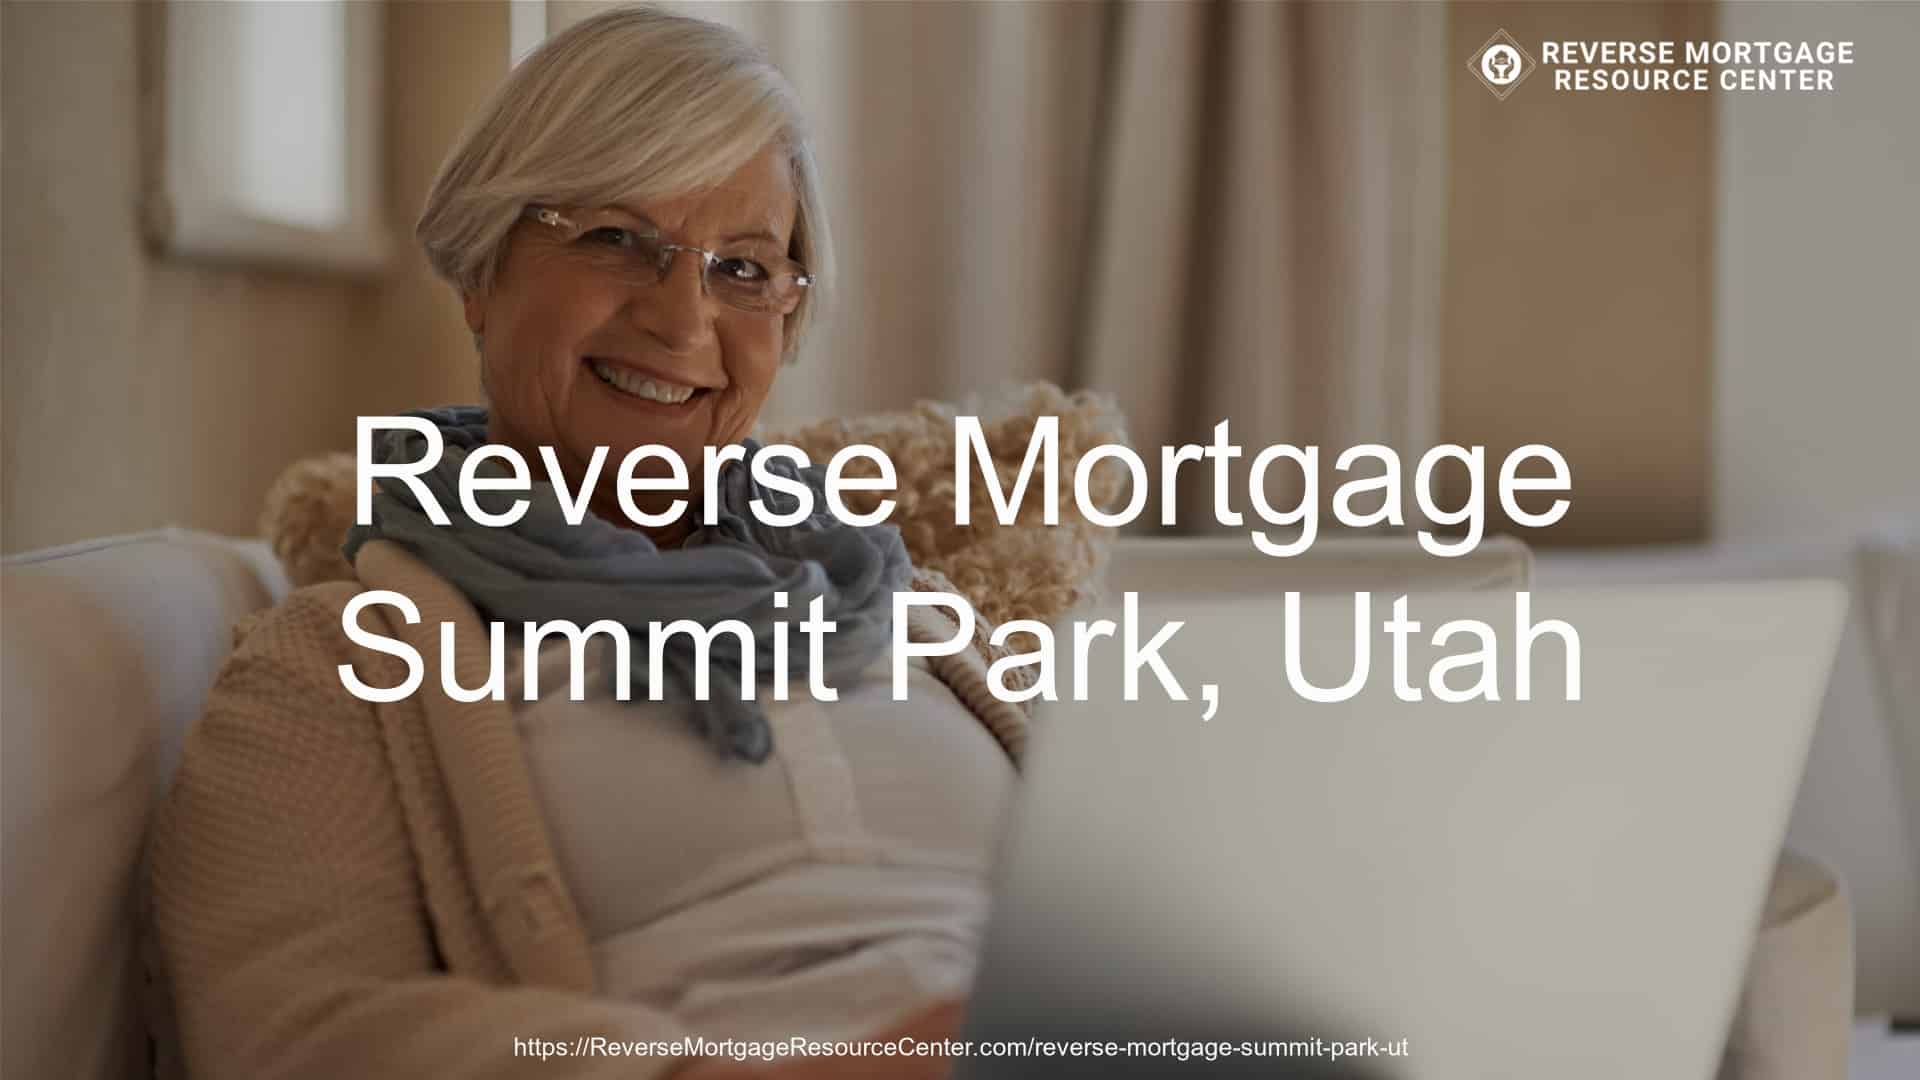 Reverse Mortgage Loans in Summit Park Utah